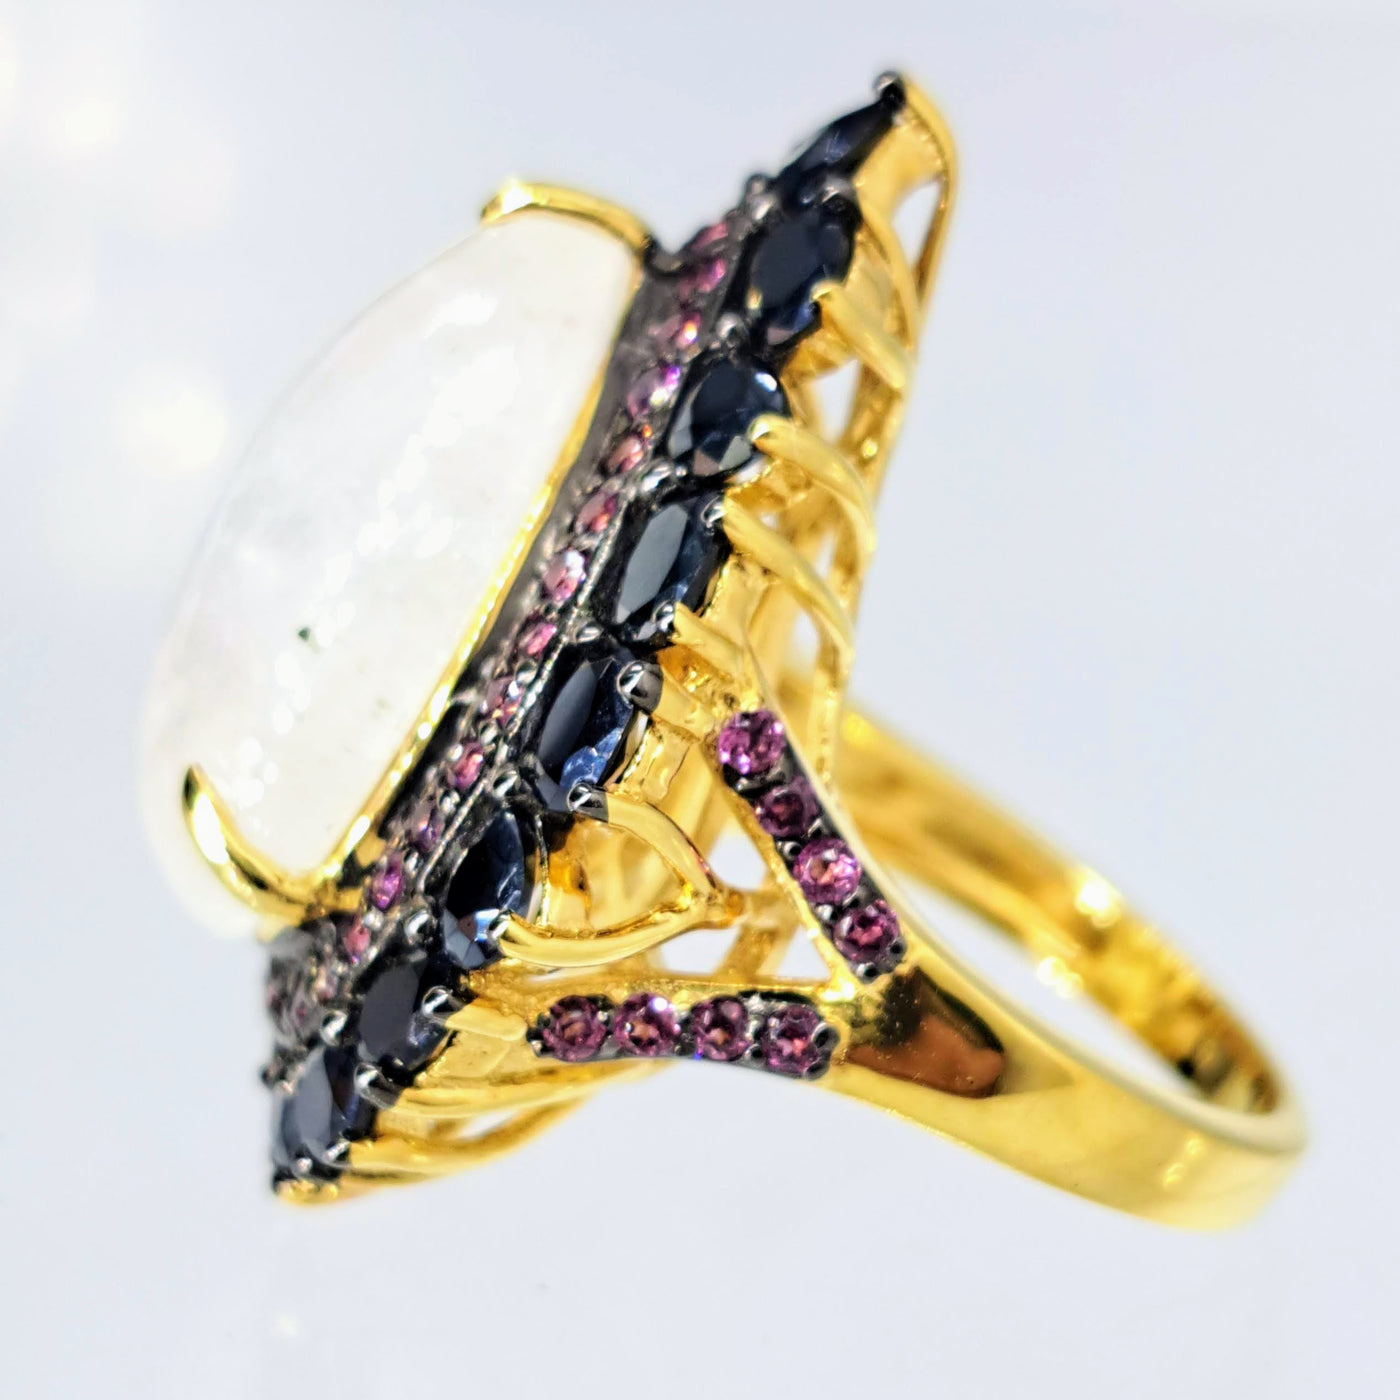 "White Queen" Sz 7 Ring - Moonstone, Rhodolite Garnet, Black Sapphire, 18k Gold Sterling